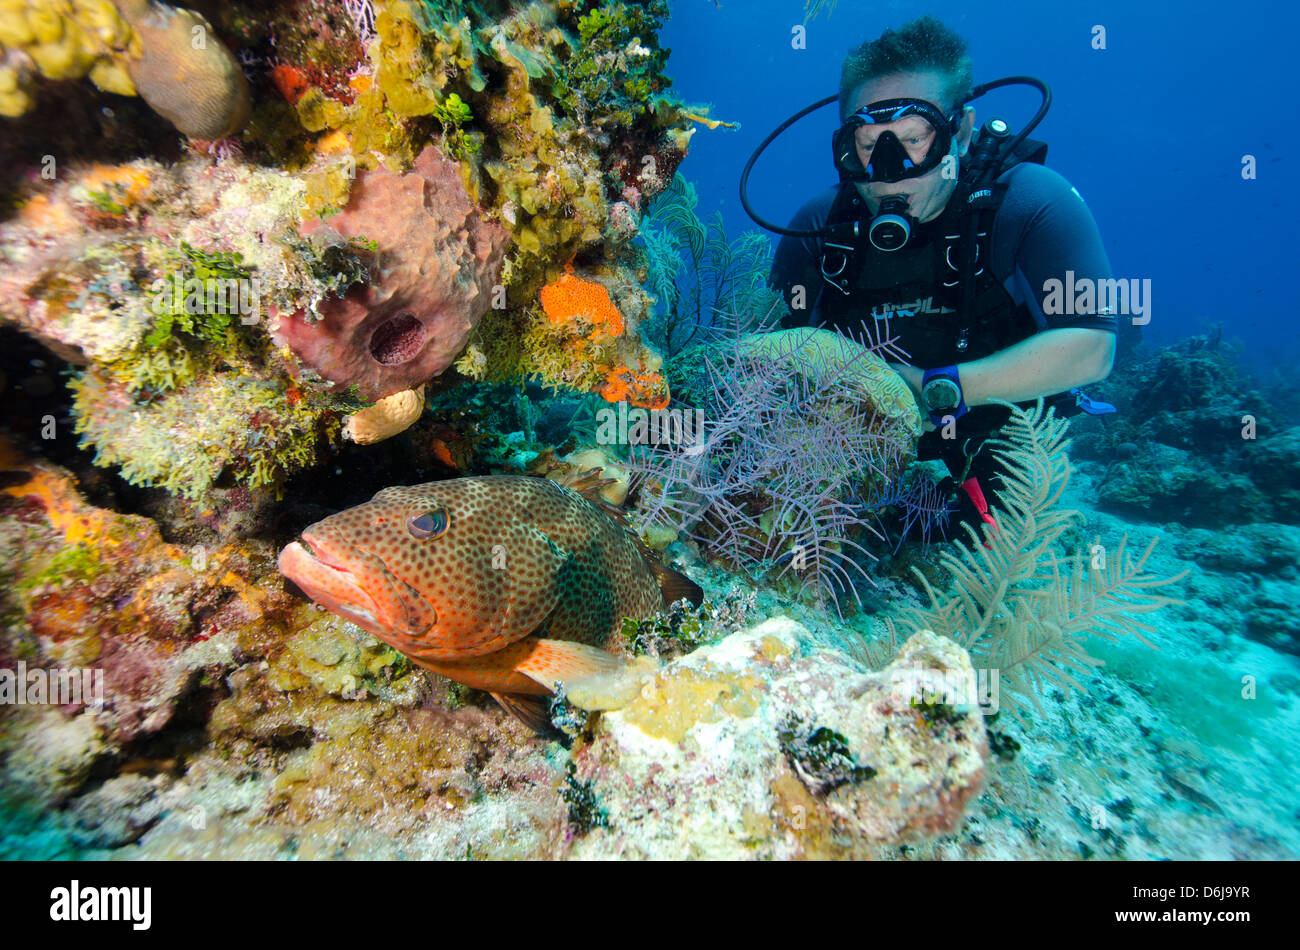 Diver aime regarder un groupeur se cachant dans les têtes de corail dans les îles Turques et Caïques, Antilles, Caraïbes, Amérique Centrale Banque D'Images